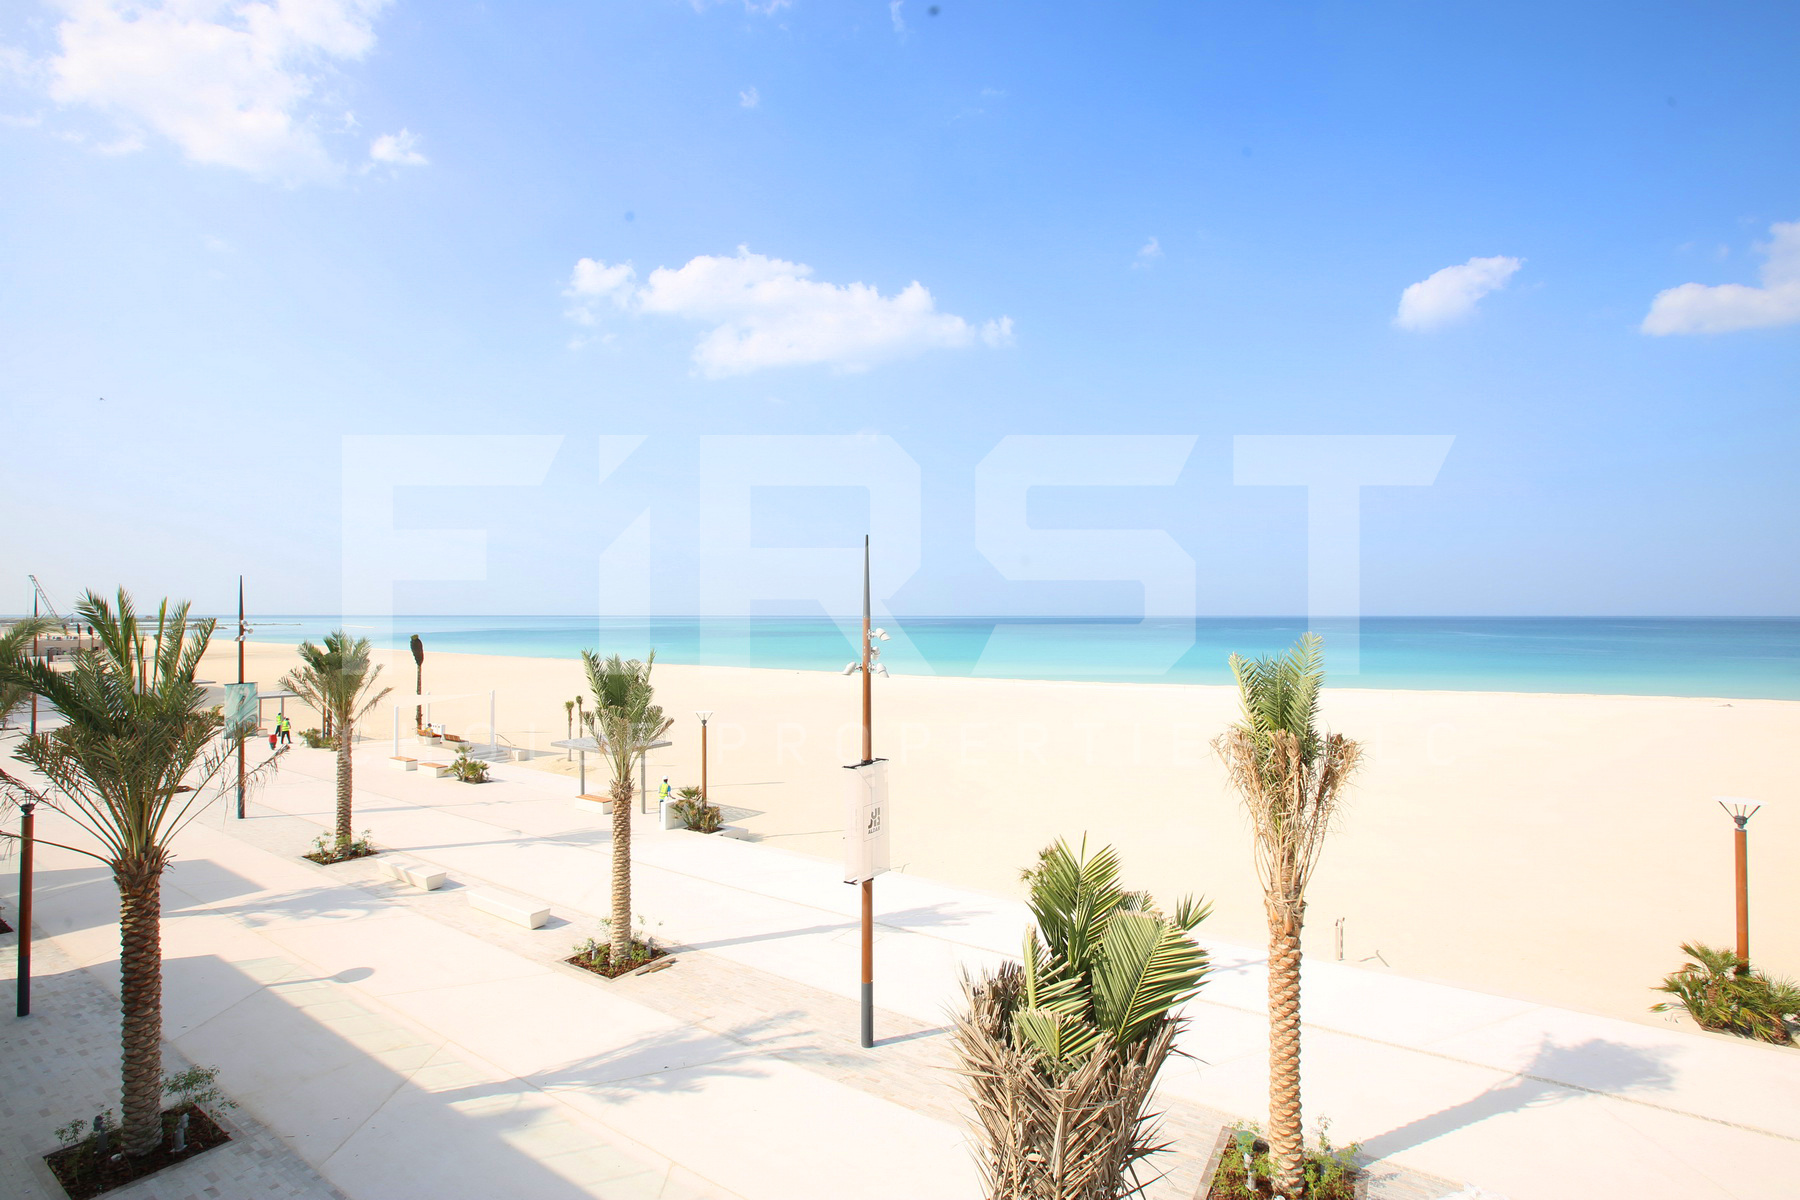 Mamsha Al Saadiyat Island UAE (4).jpg